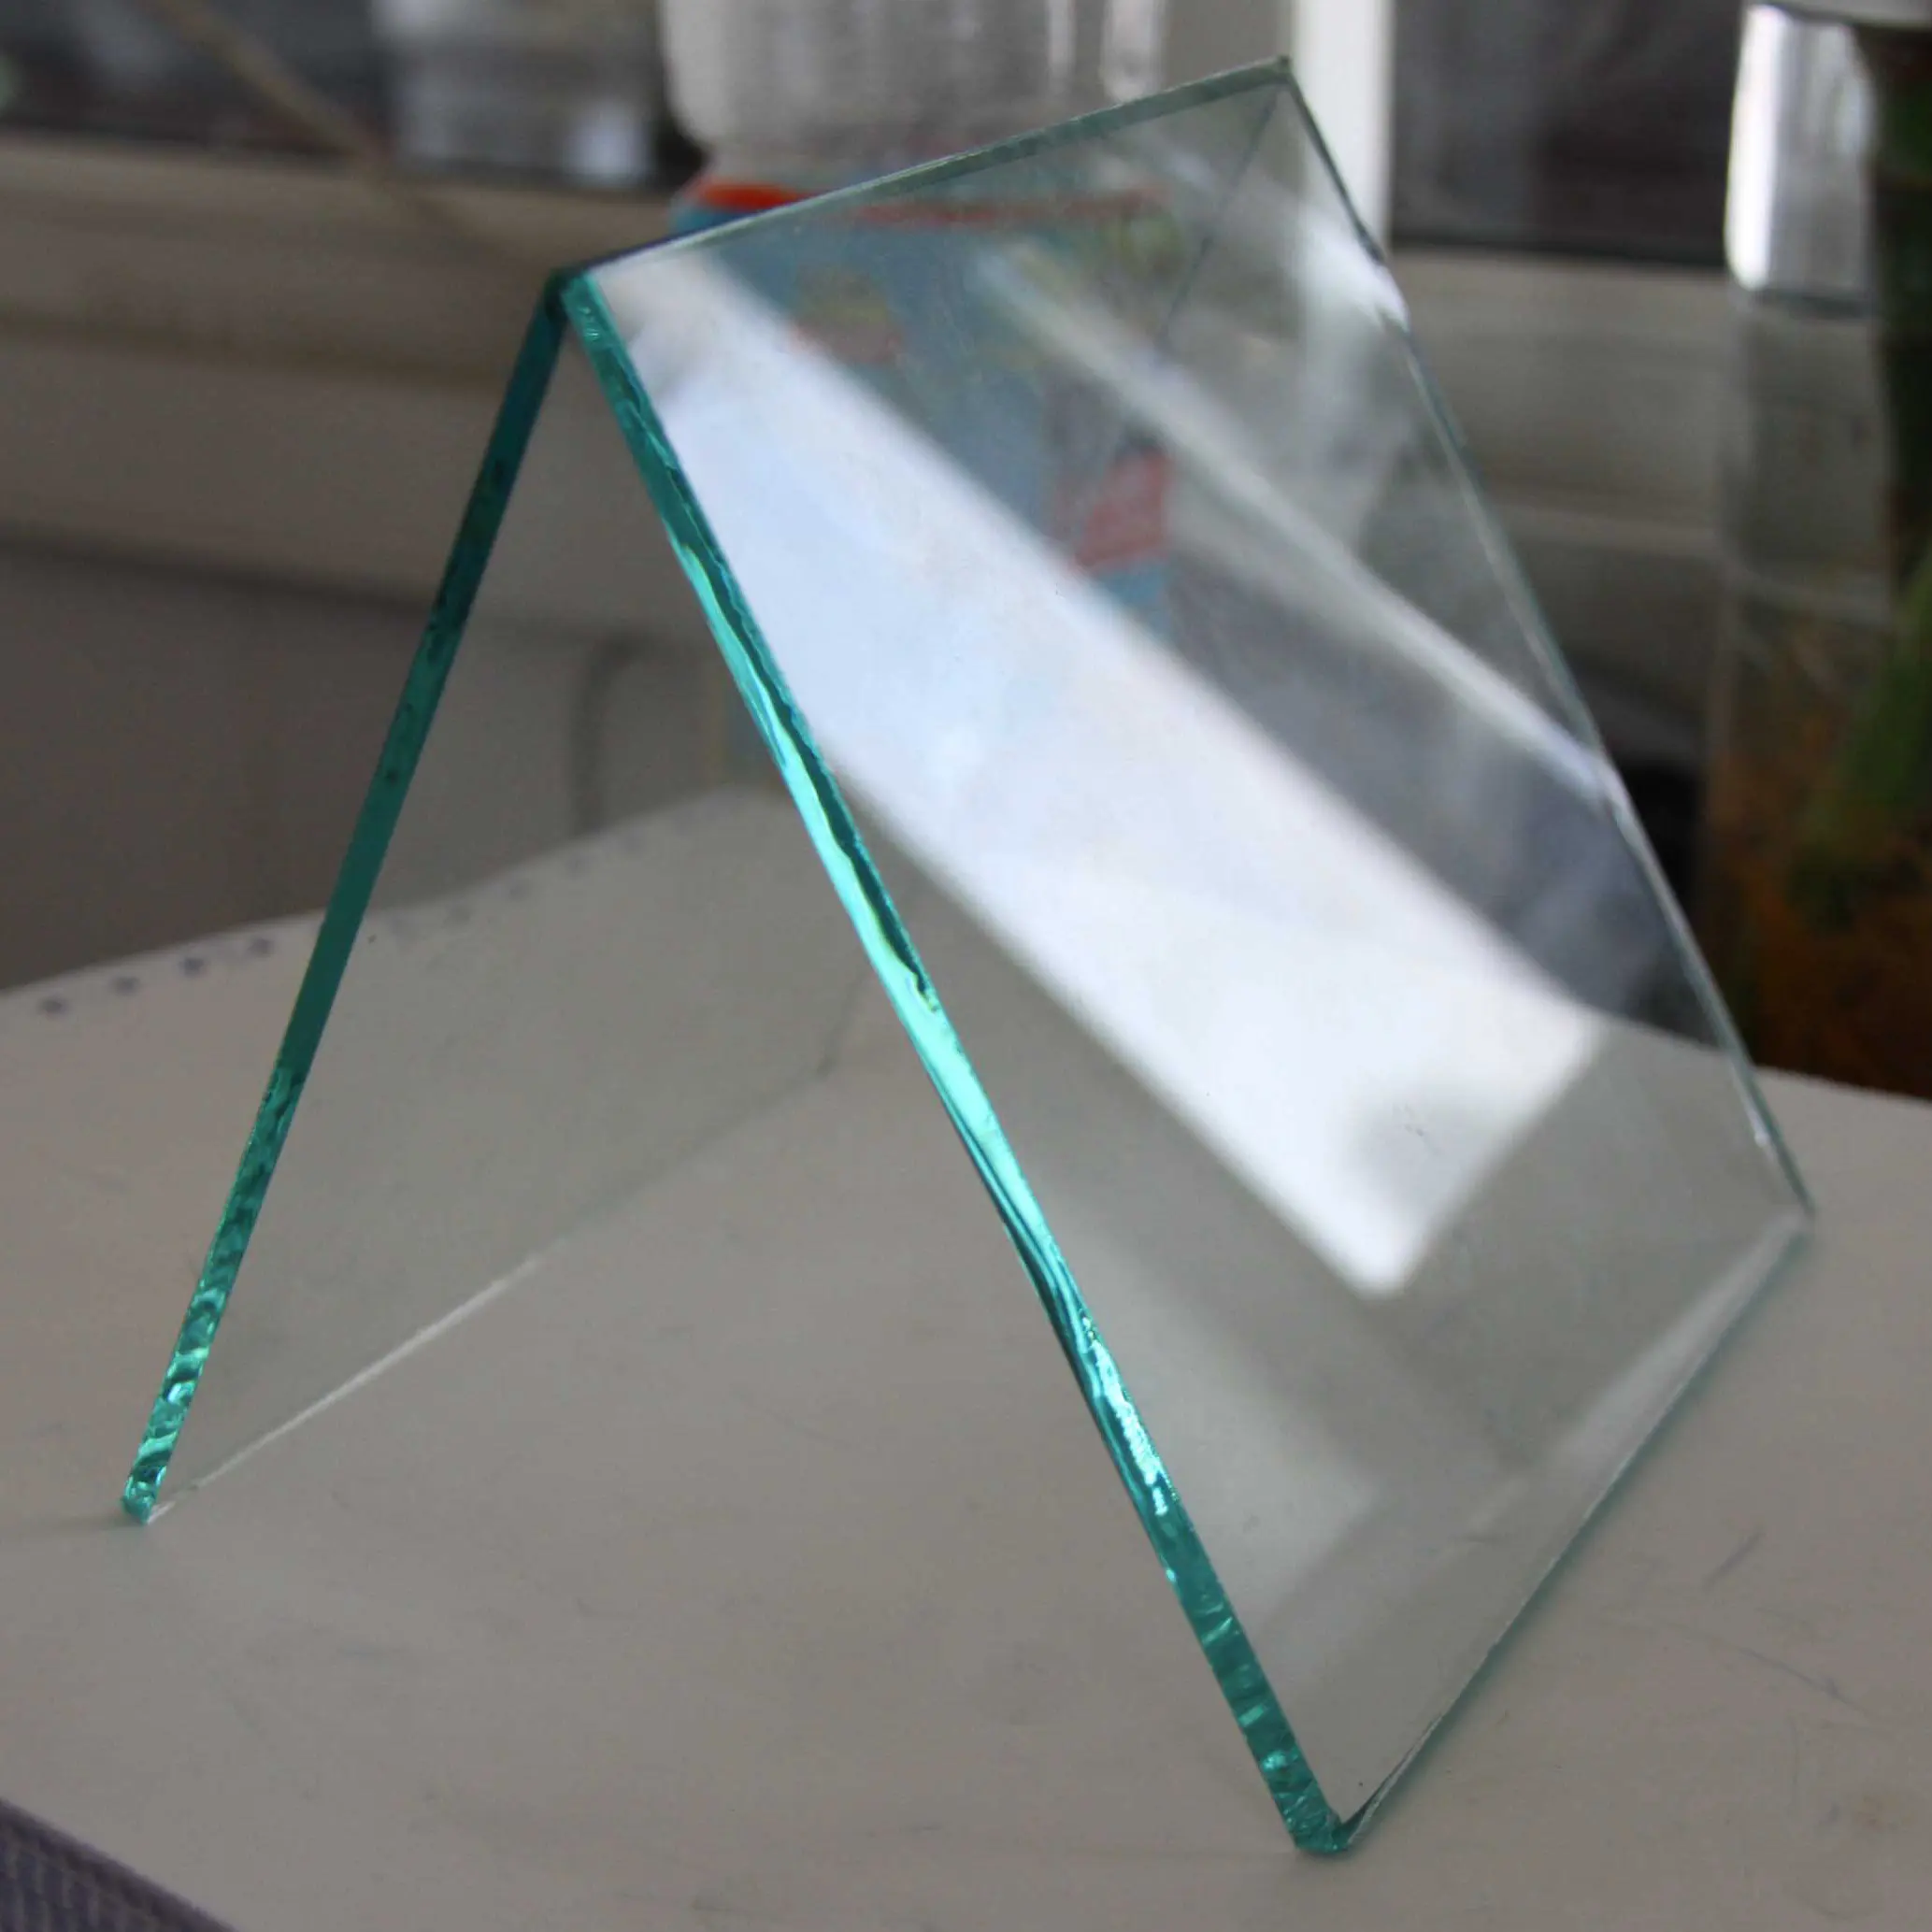 Usine vente en gros sérigraphie verre trempé impression appareil de cuisine verre congélateur pièces réfrigérateur vin réfrigérateur porte réfrigérateur verre